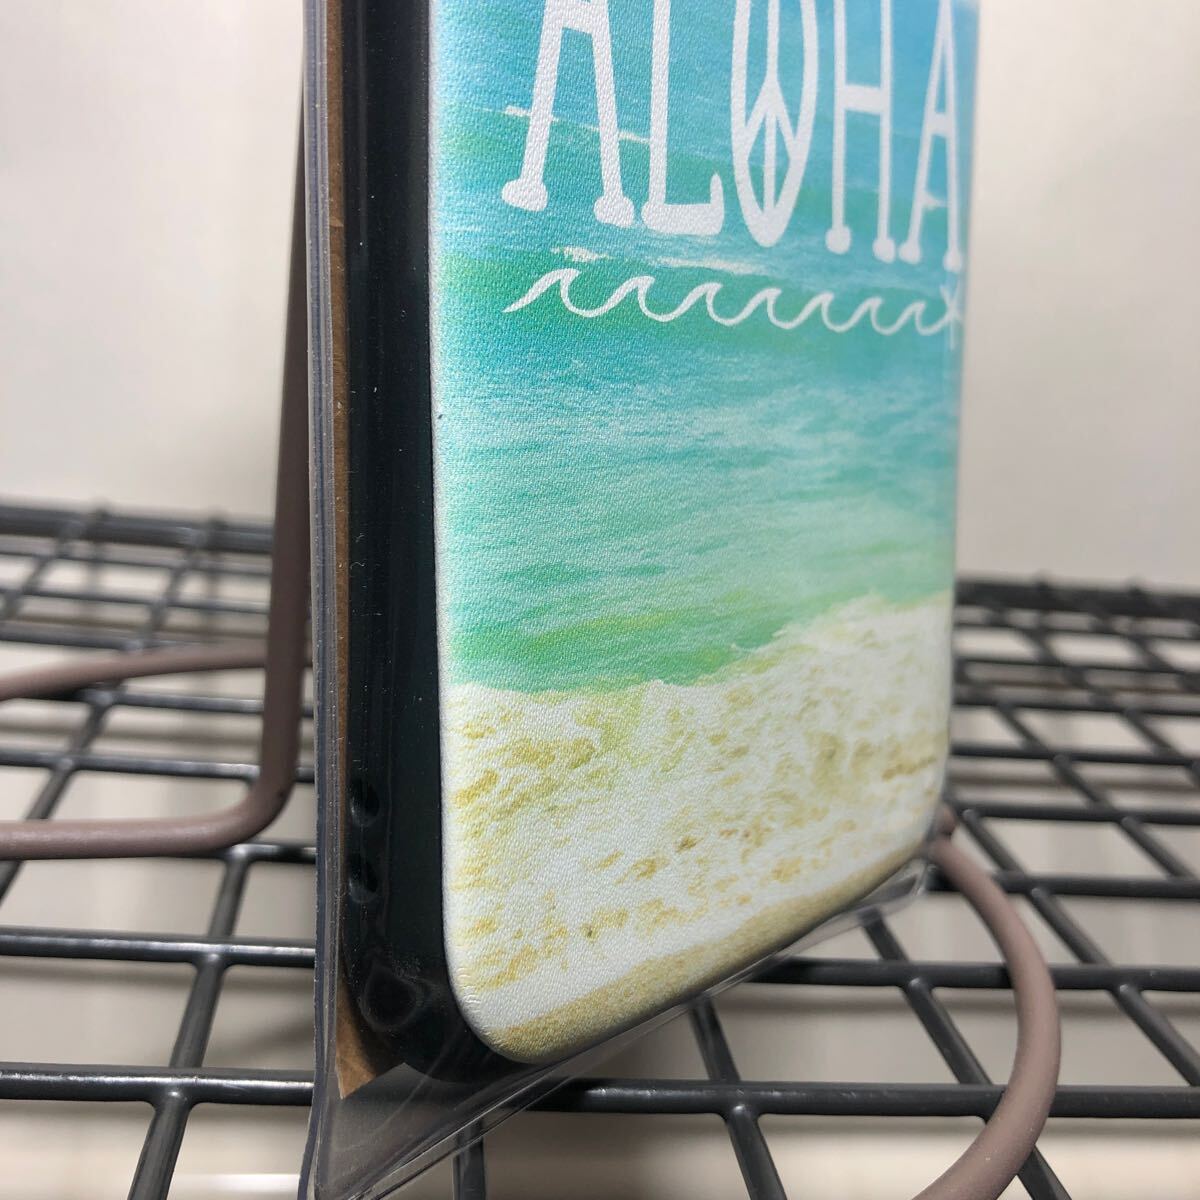 Kahiko カヒコ　iPhone X/XS ケース ハワイアン　海岸柄　スマホケース iPhoneケース 